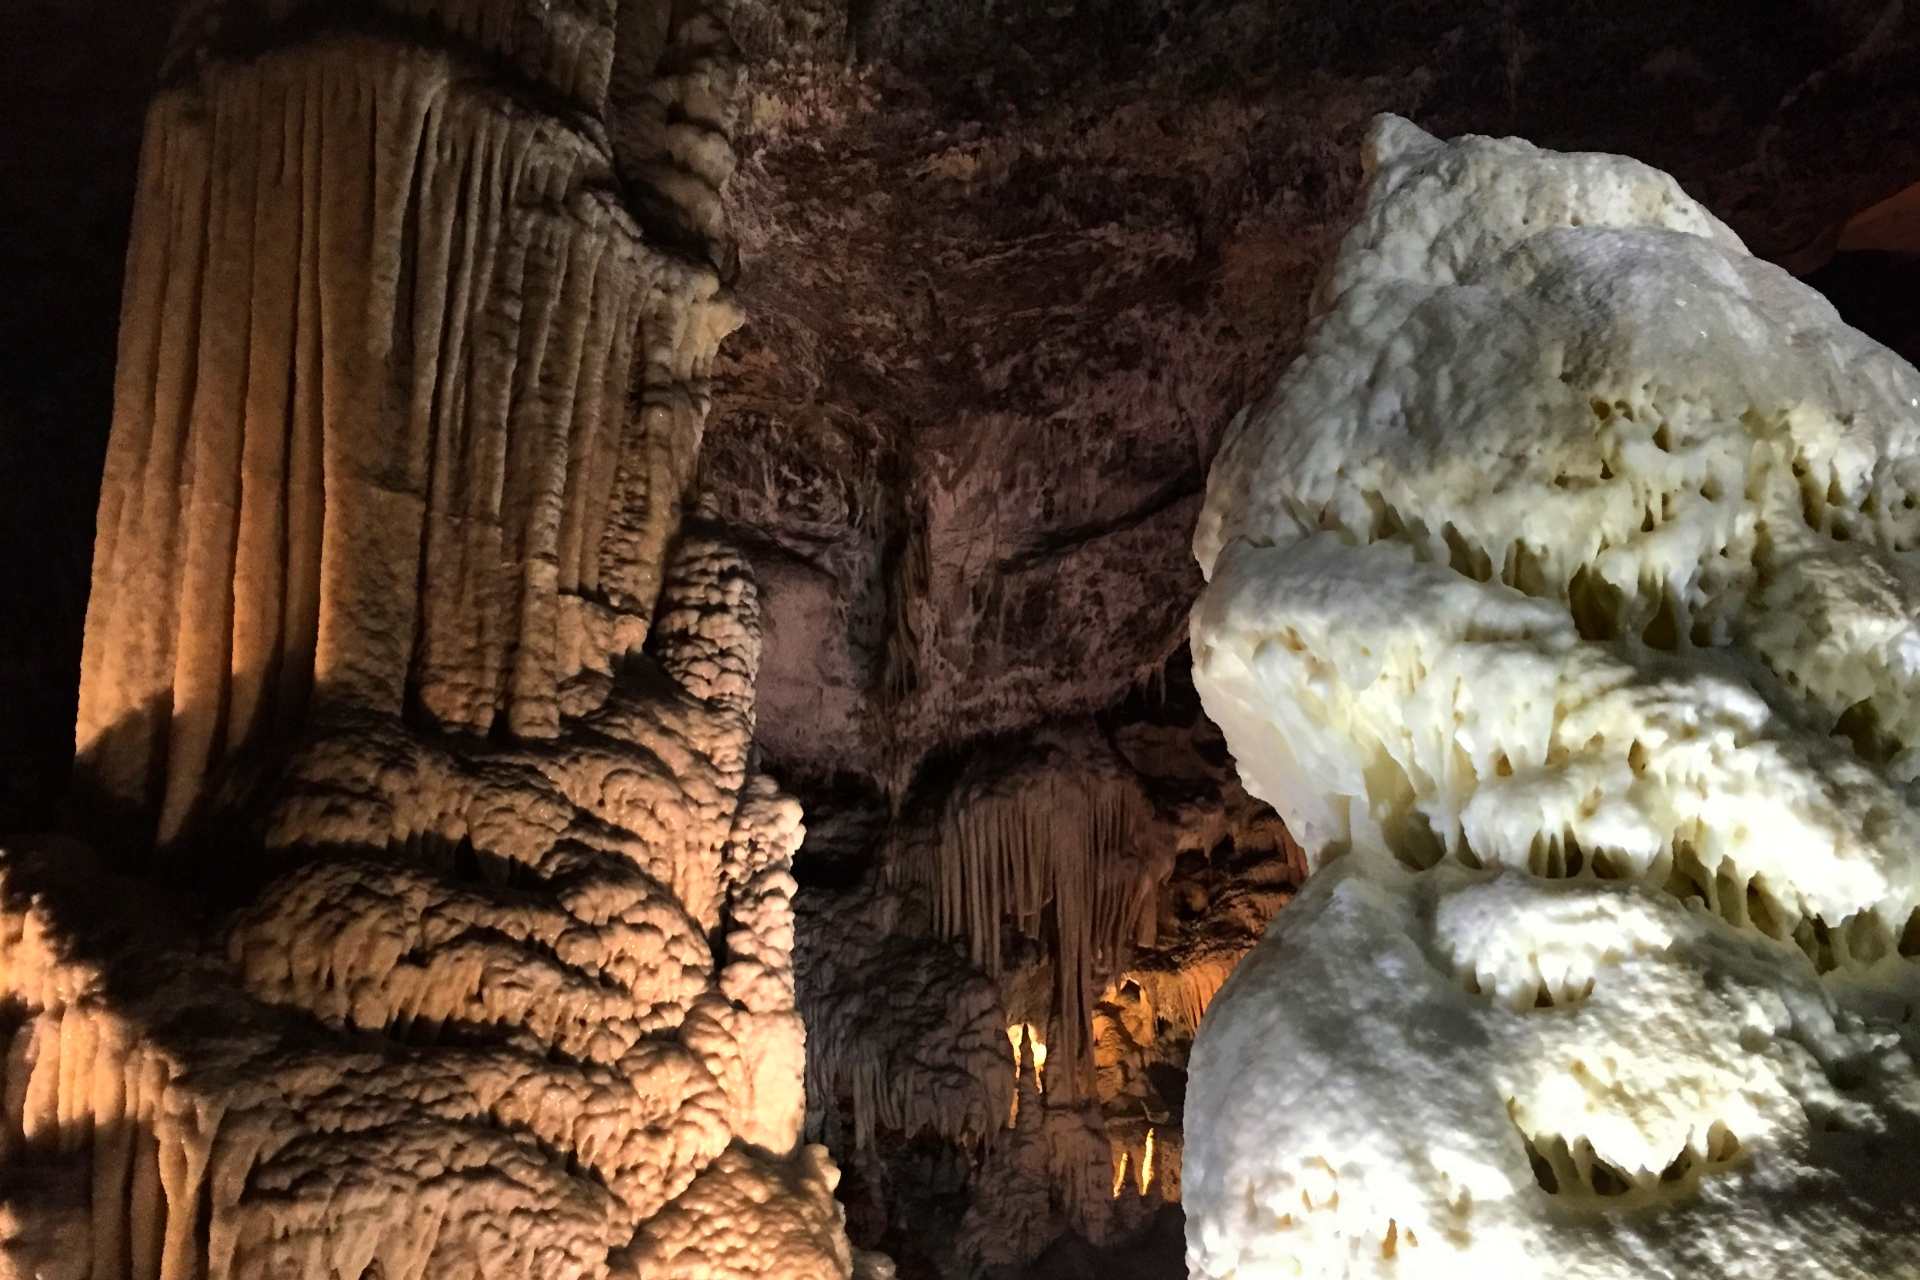 Höhle von Postojna | Wir empfehlen die Besichtigung der Postojna-Höhle auf der Hin- oder Rückfahrt nach Istrien. Ansonsten sollte man ein Tagesausflug einplanen.